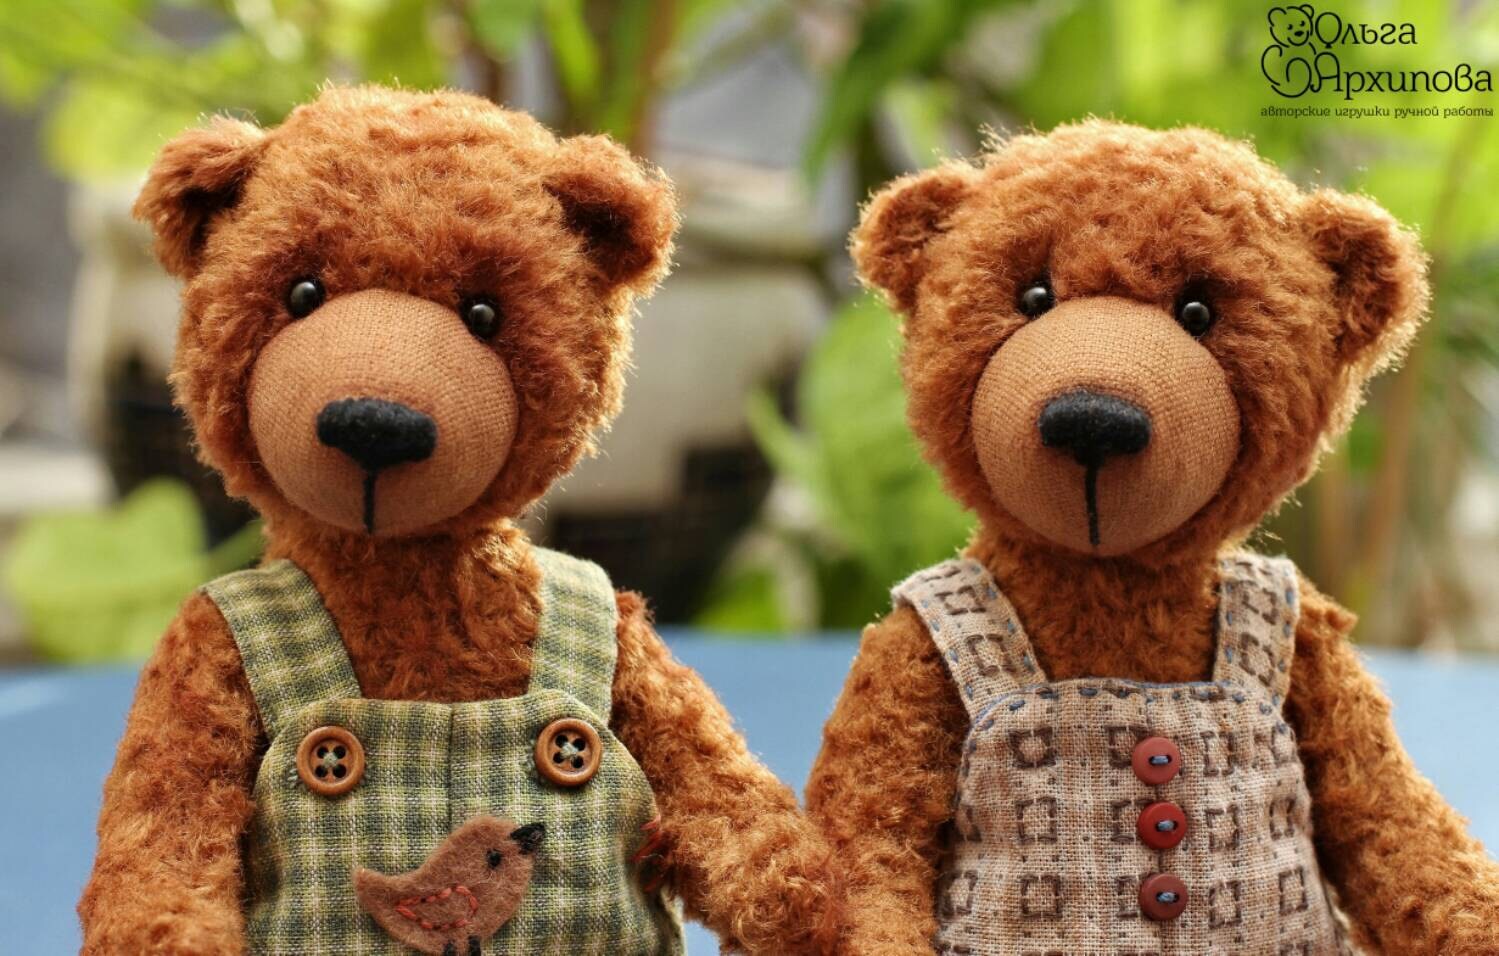 Bears Bim and Bom Stuffed Teddy Bear Stuffed Animal by Proteddy